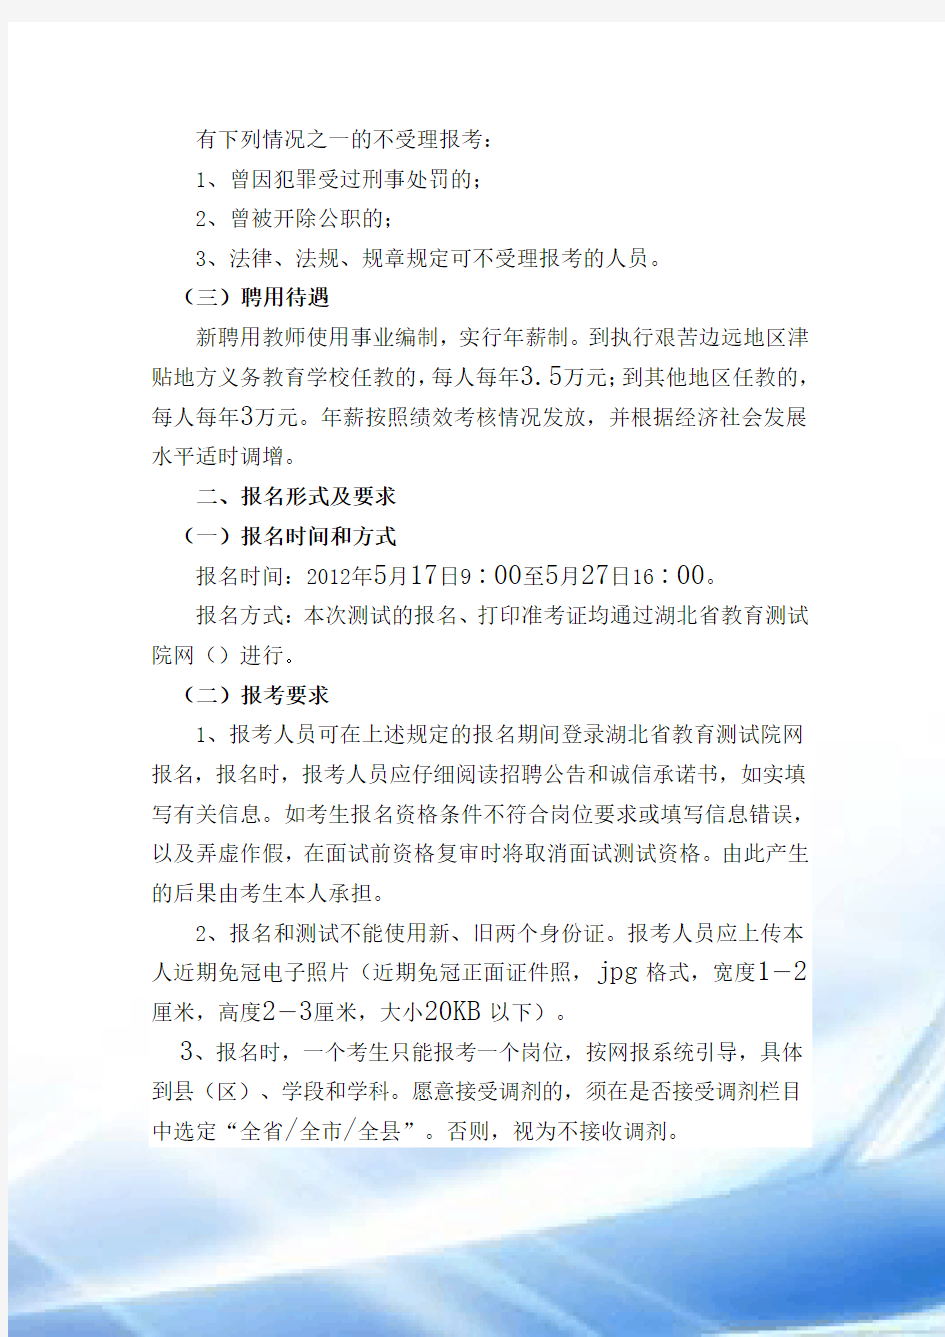 2012年湖北省农村义务教育学校教师招聘考试公告